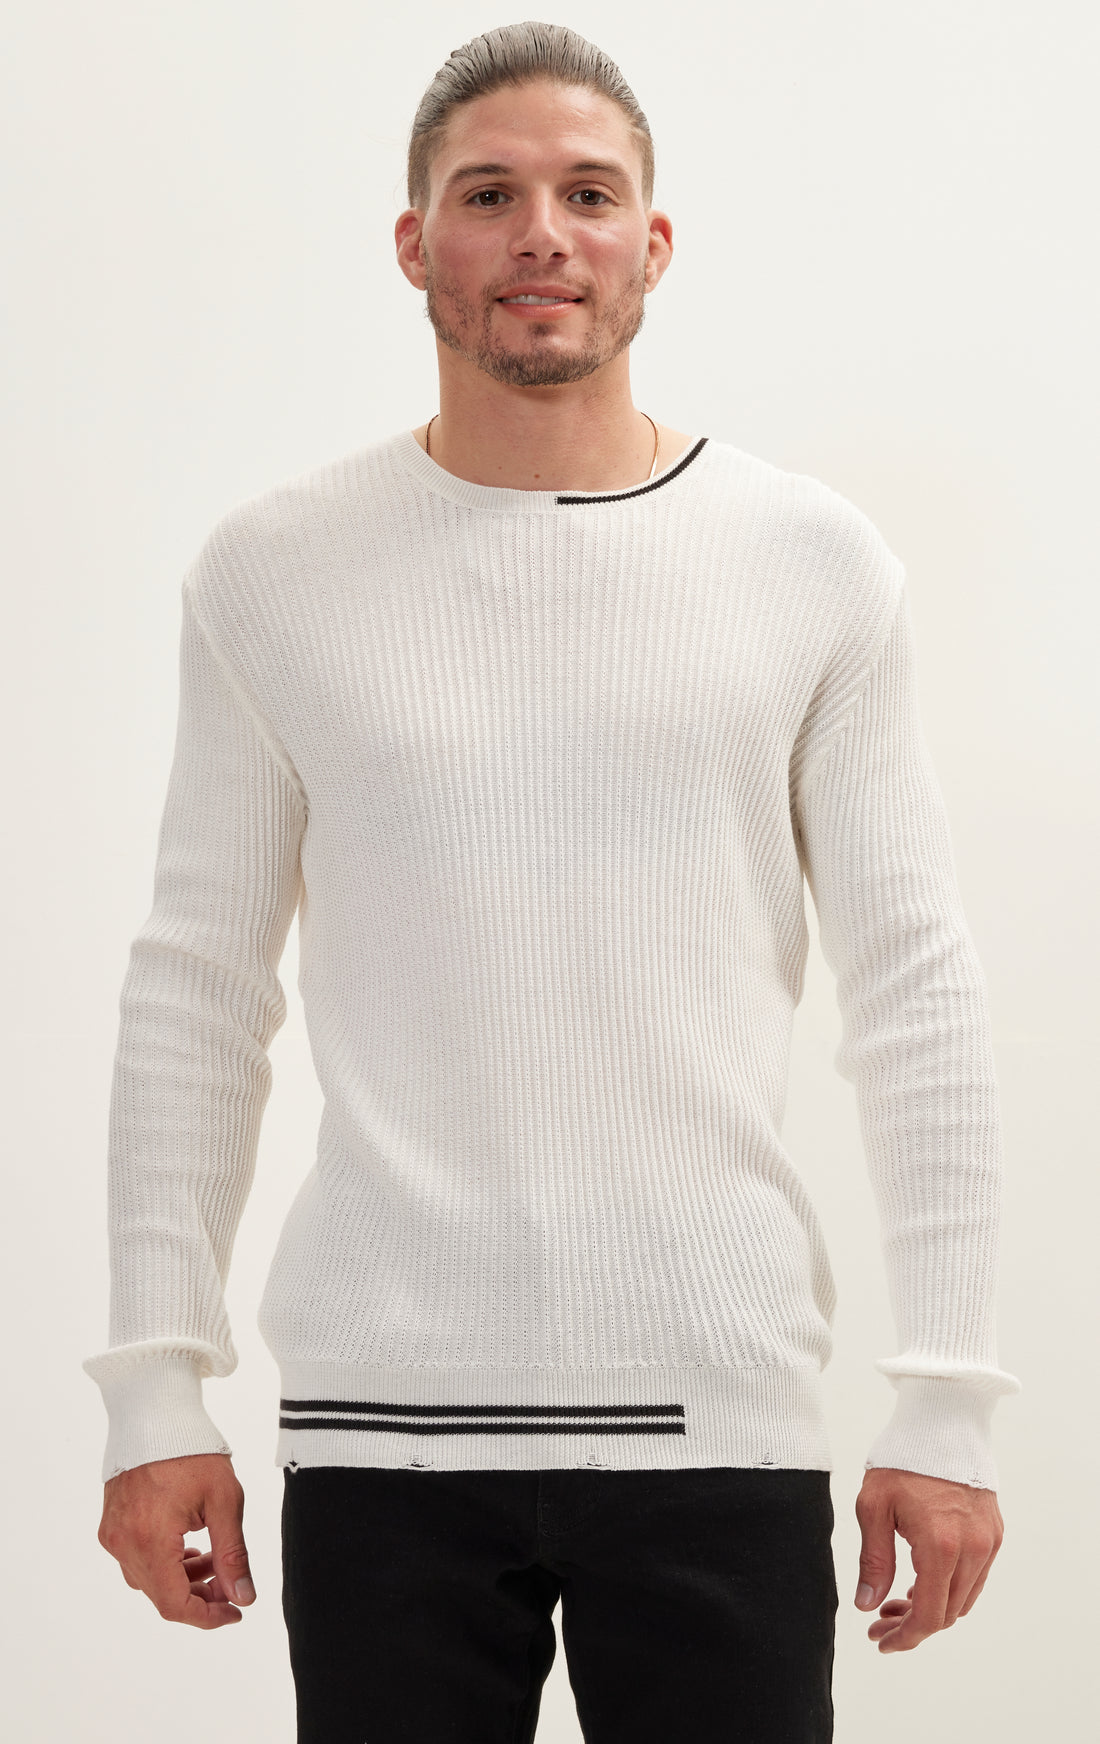 Half Striped Sweater - White